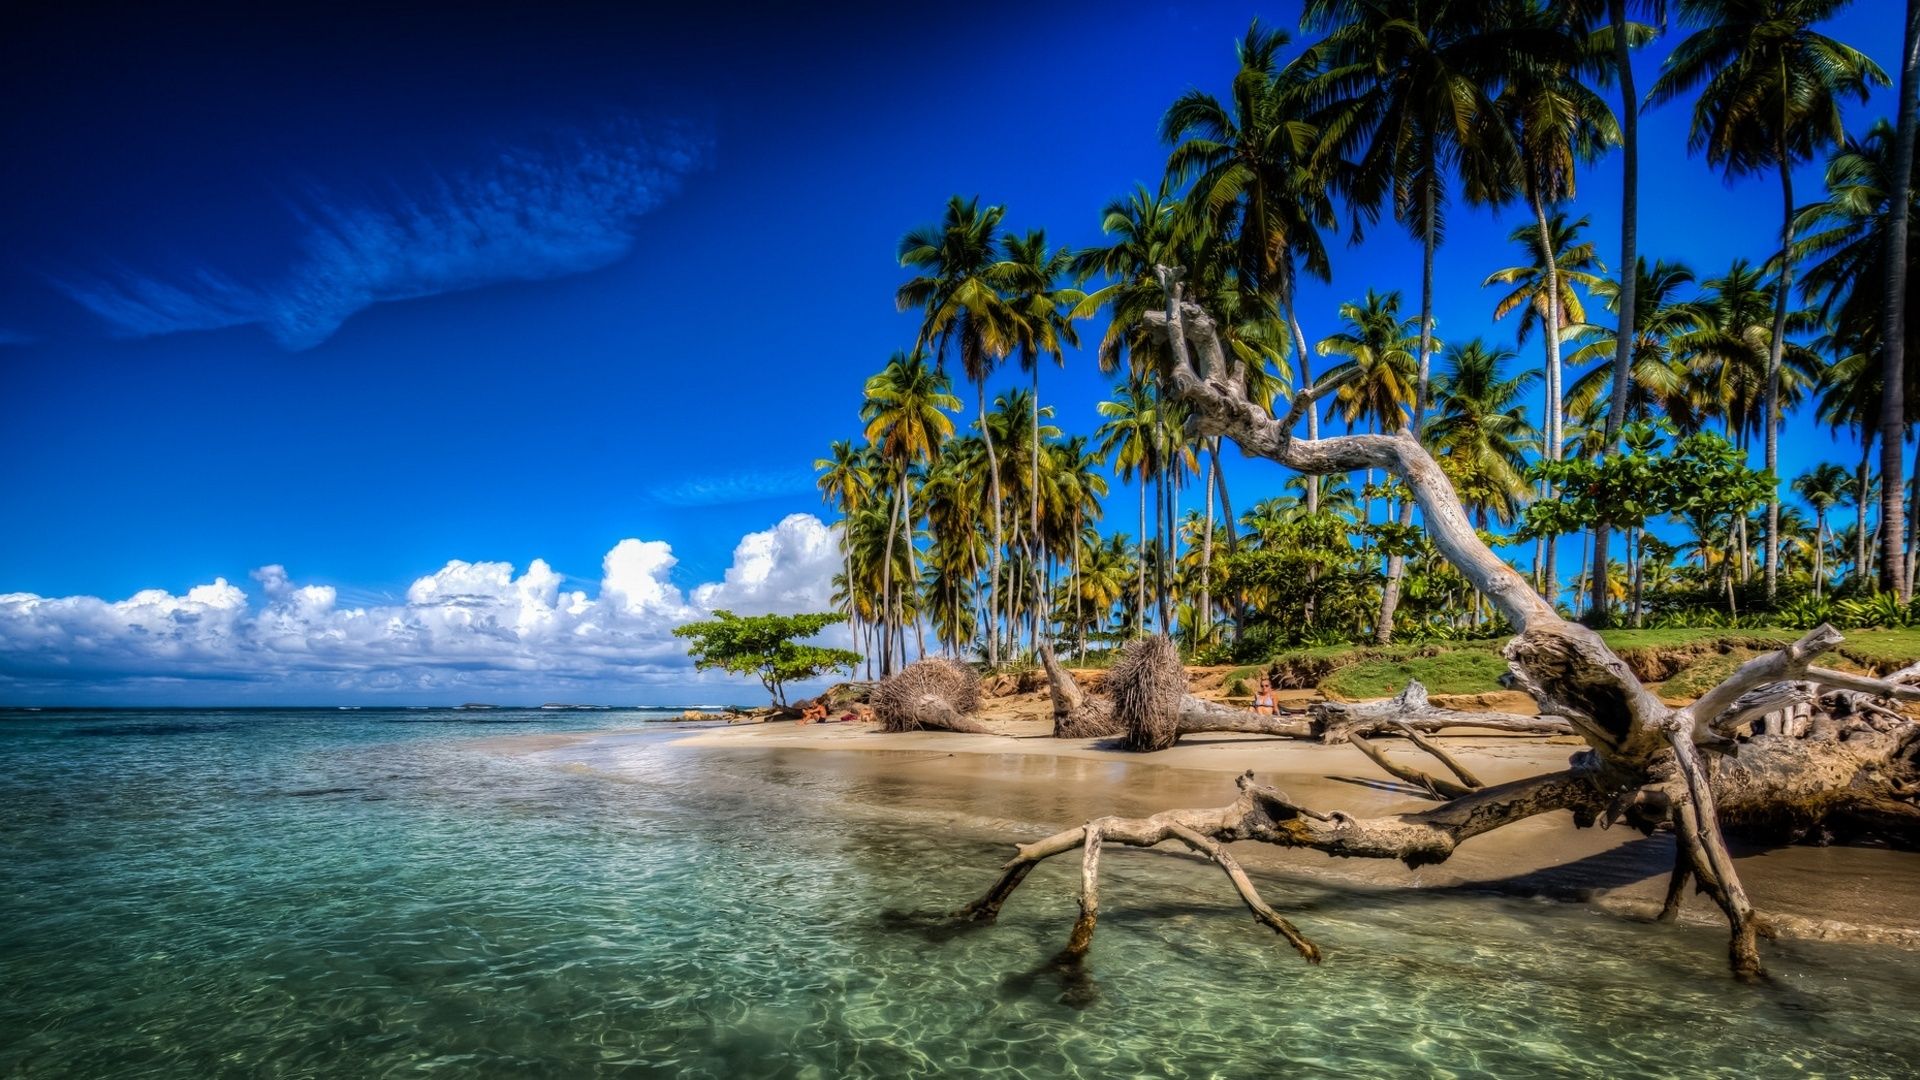 Wallpaper Caribbean, palm trees, beach, sea, clouds, Dominican